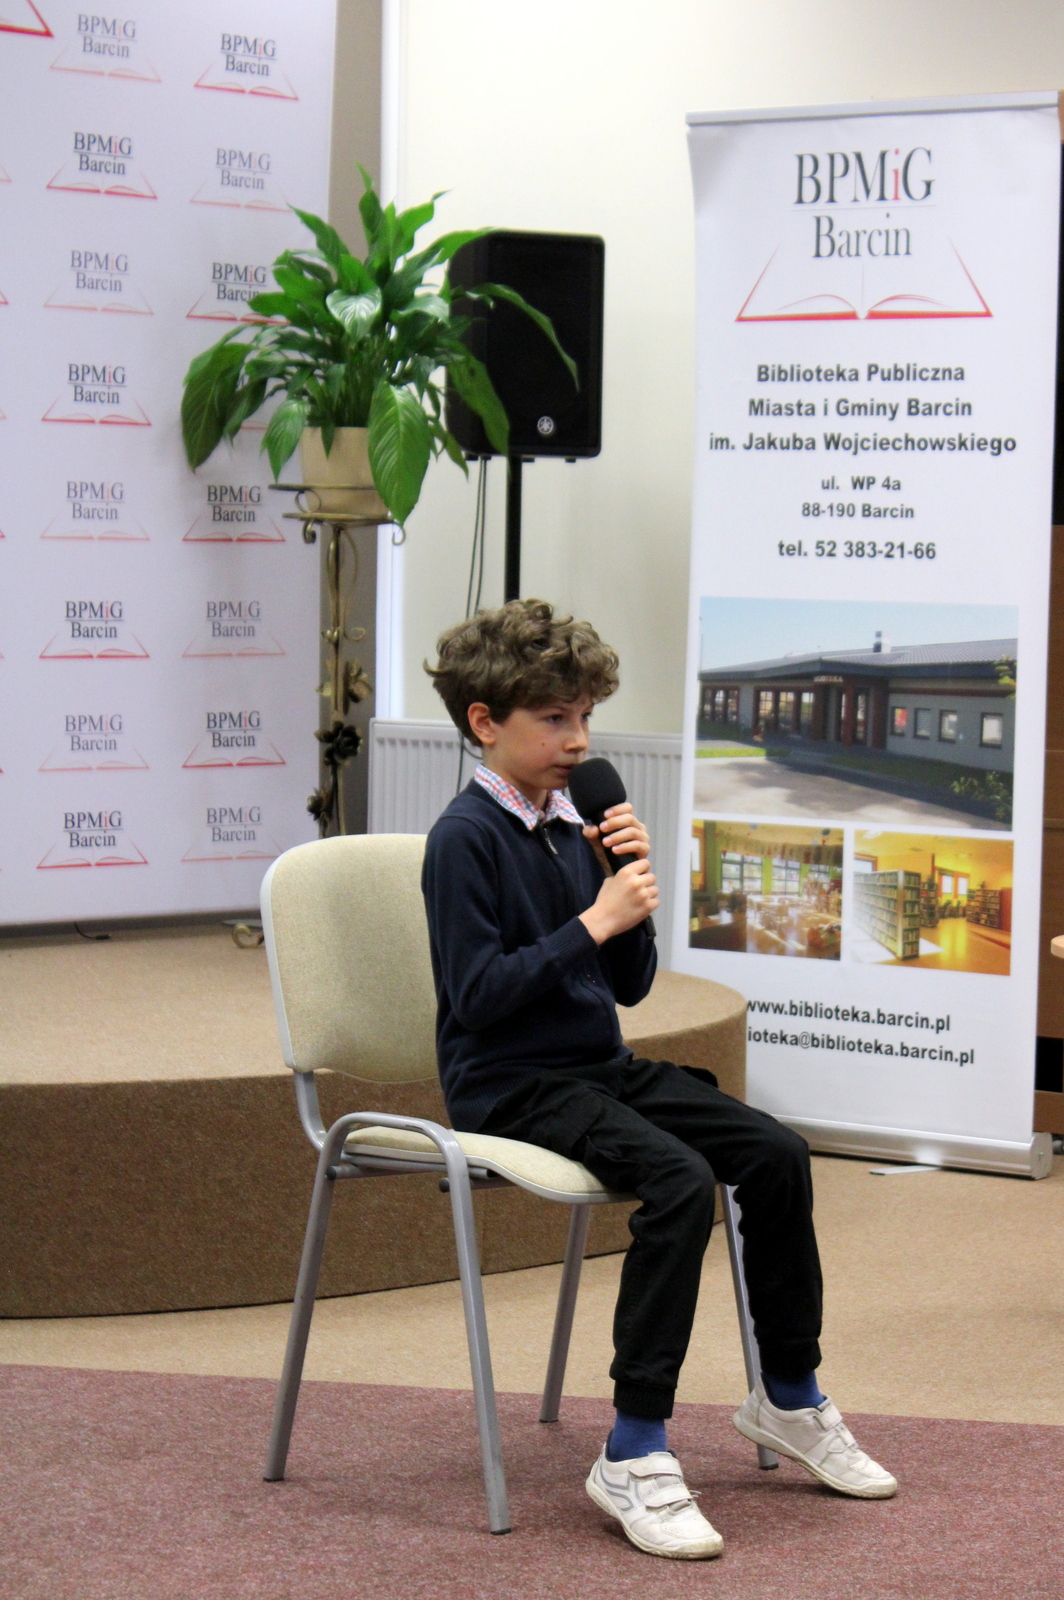 Chłopiec, uczestnik konkursu siedzący na krześle, ubrany w biemny sweter spod którego widać kołnieżyk koszuli w kolorową kratę, czarne spodnie i białe buty, w ręku trzyma mikrofon.